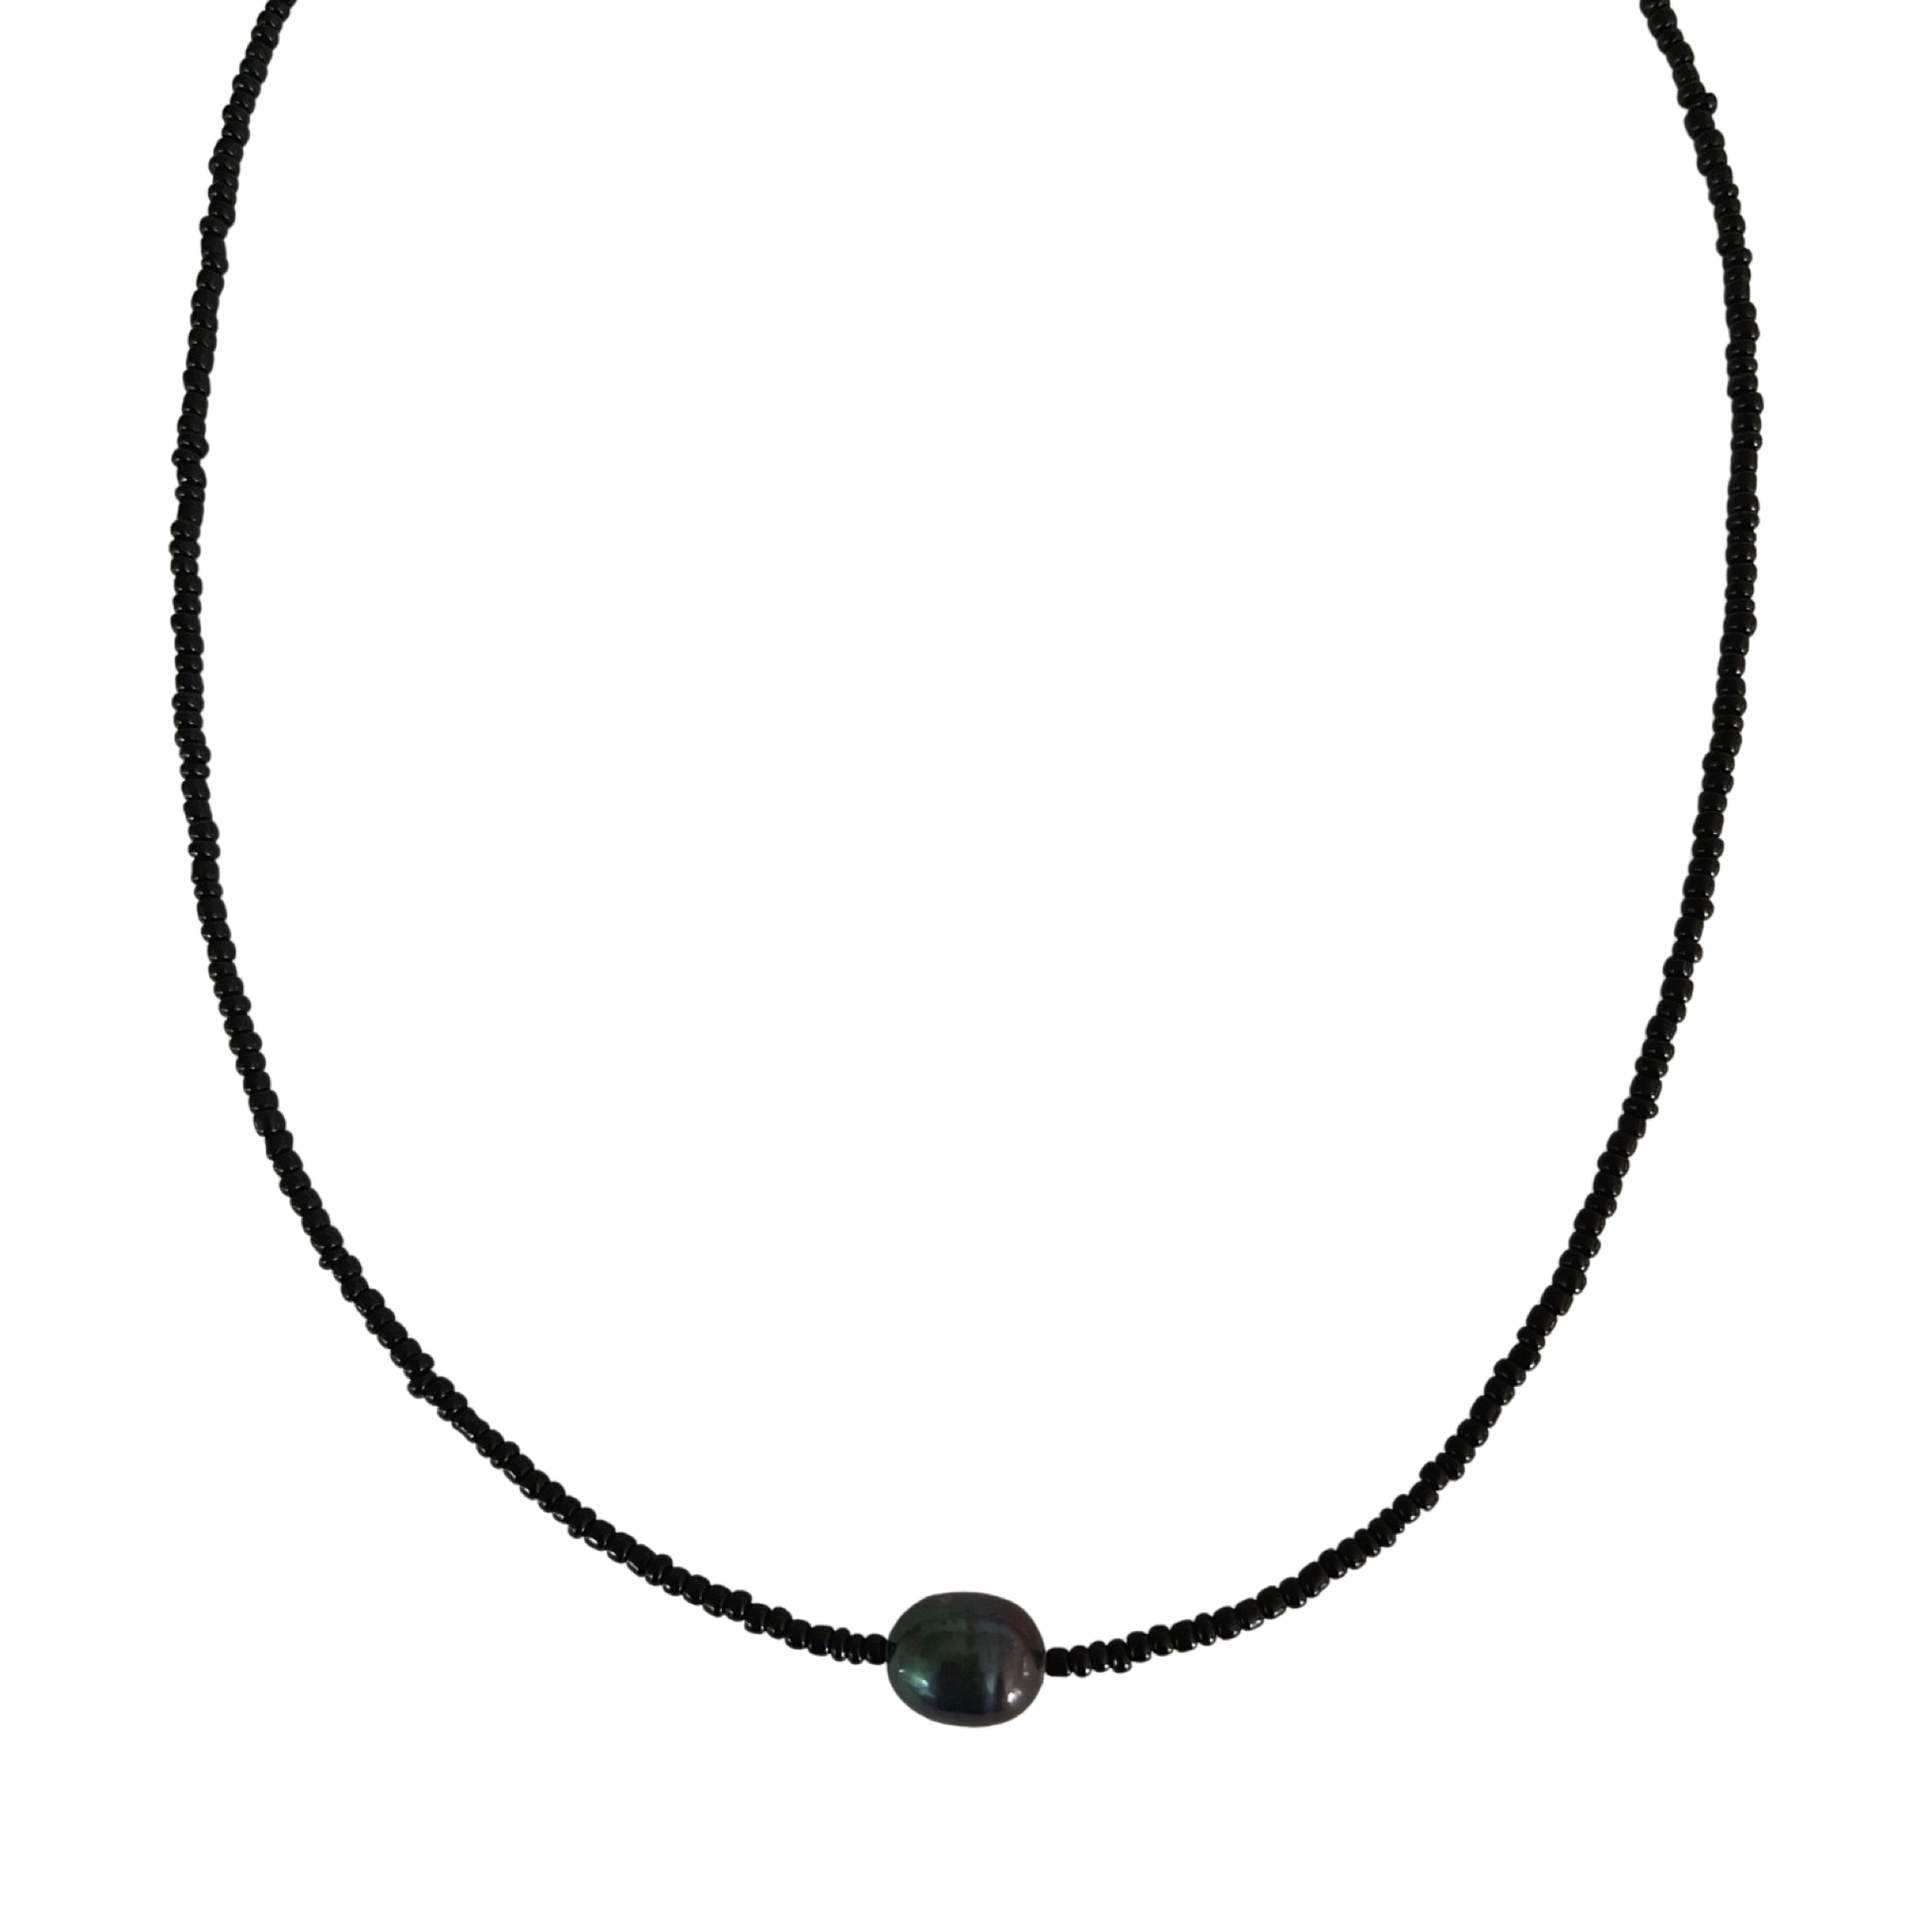 9.0mm Freshwater Pearl Sierra Seed Bead Necklace Black / Dark Grey